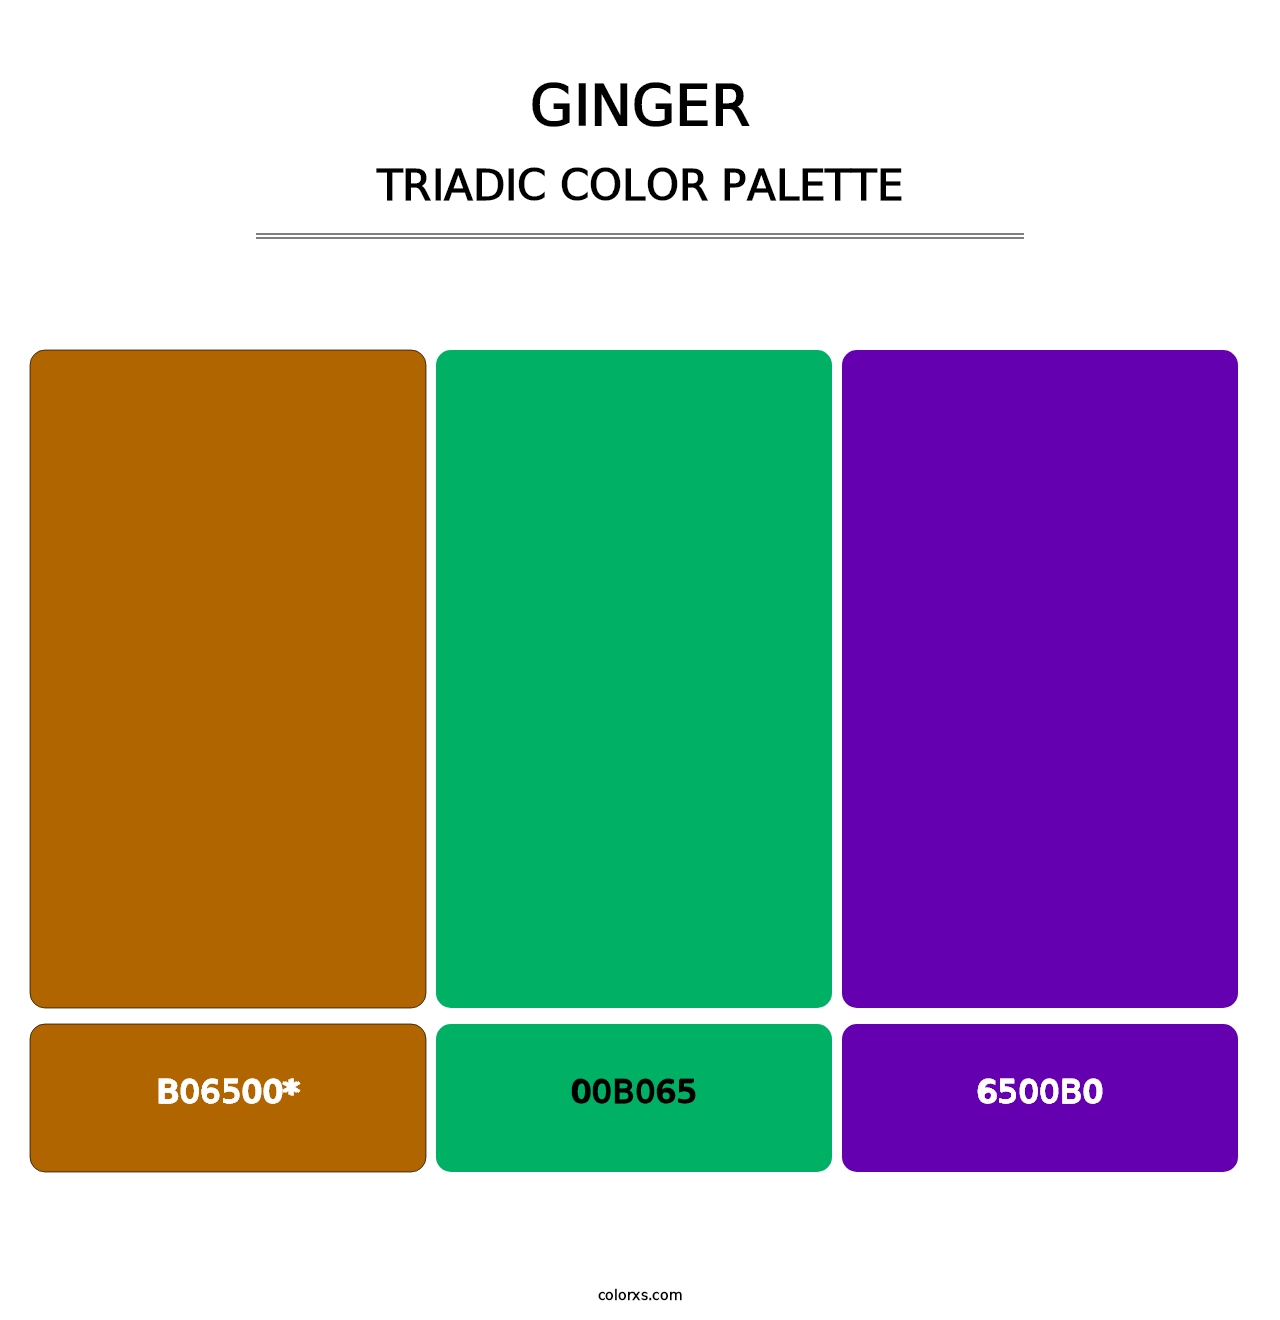 Ginger - Triadic Color Palette